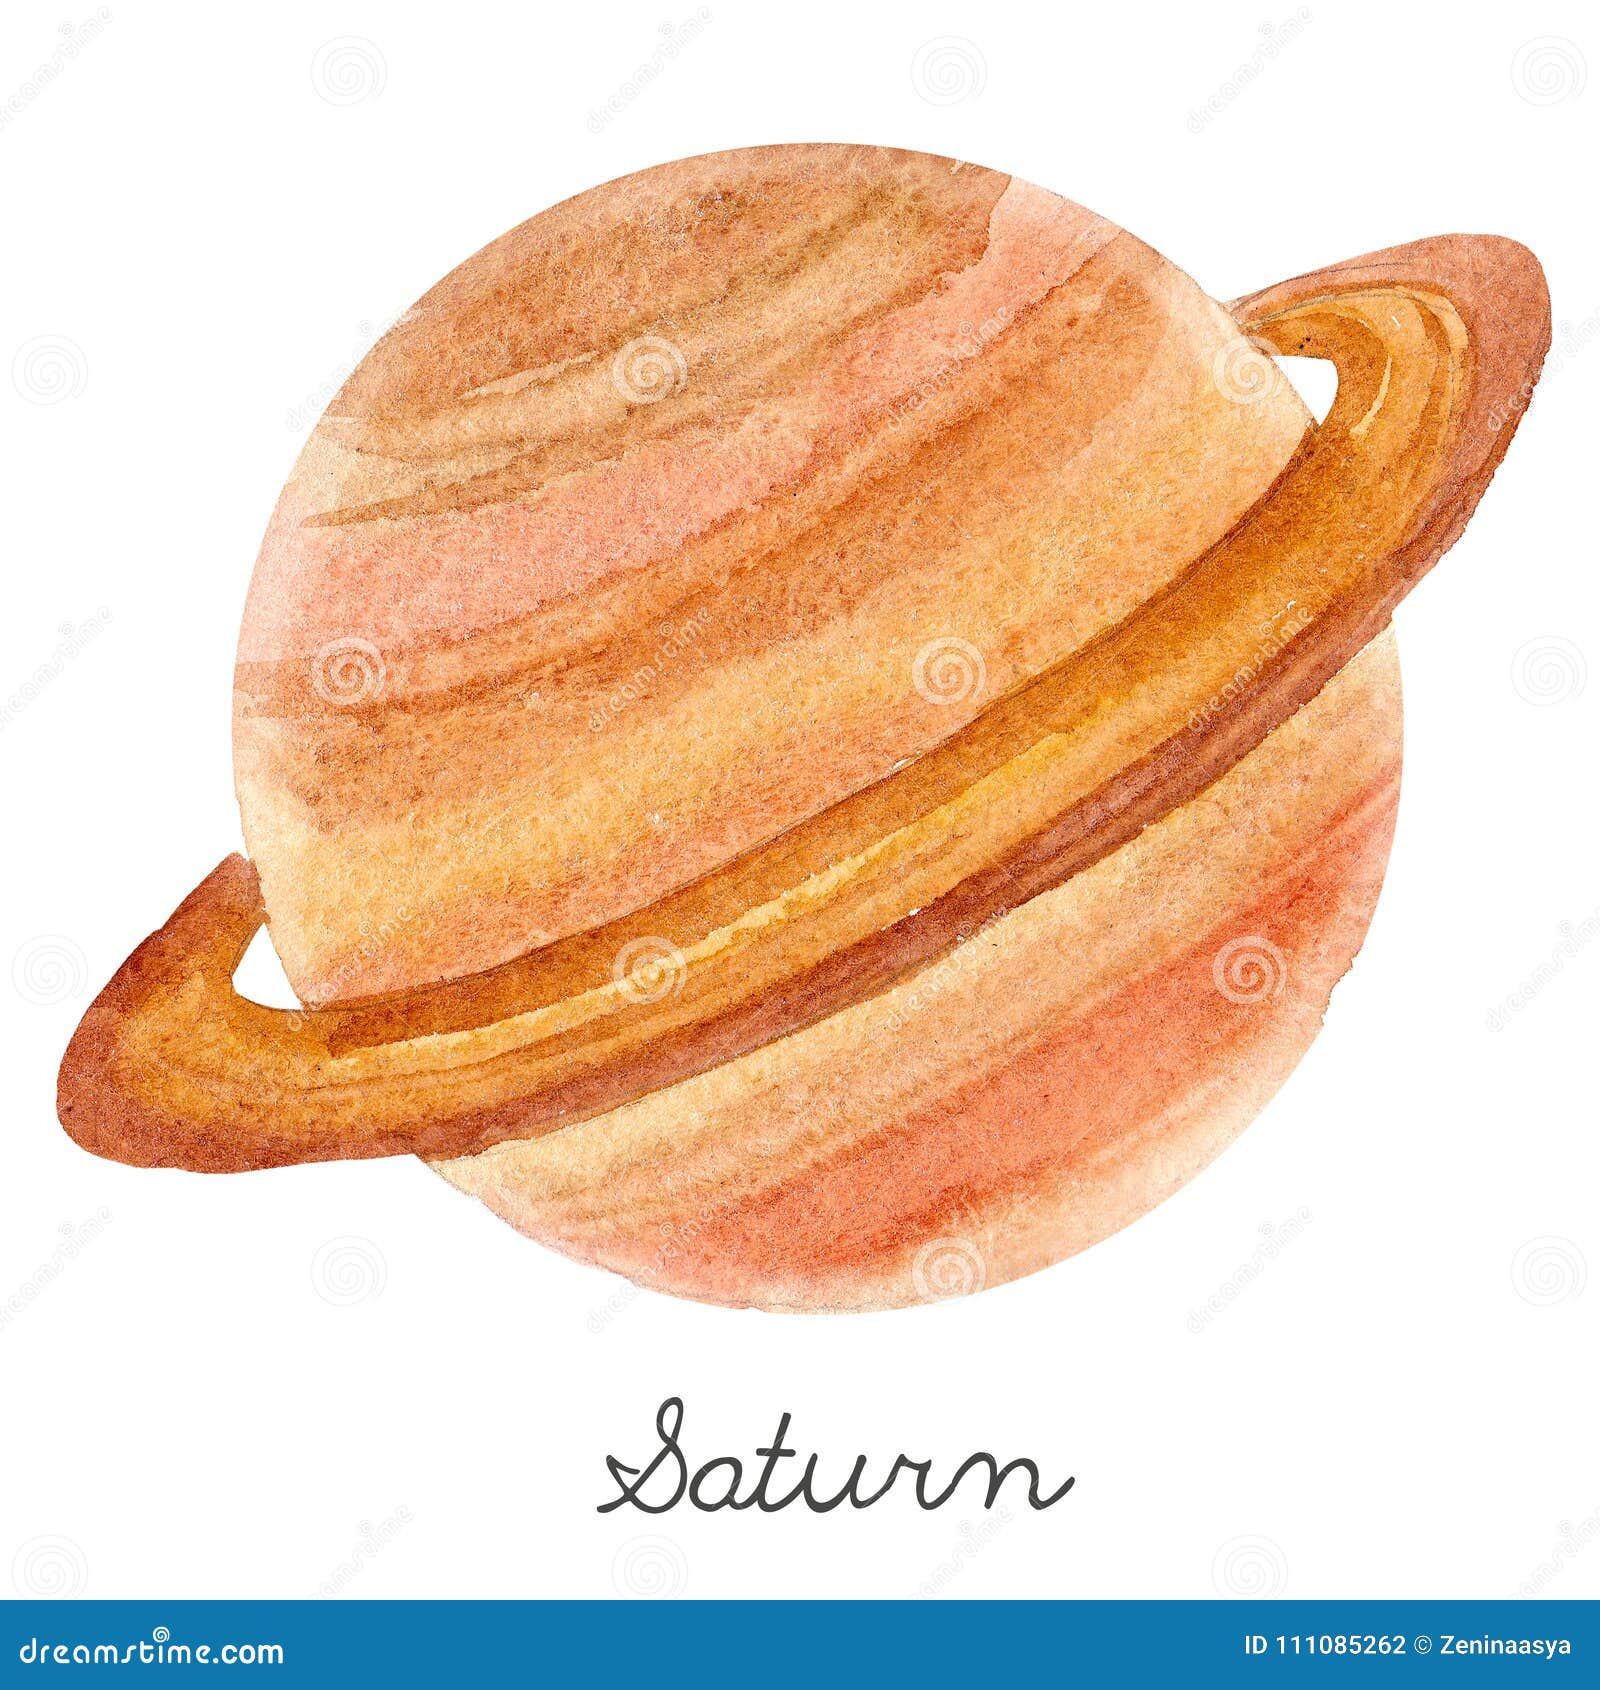 watercolor saturn planet 